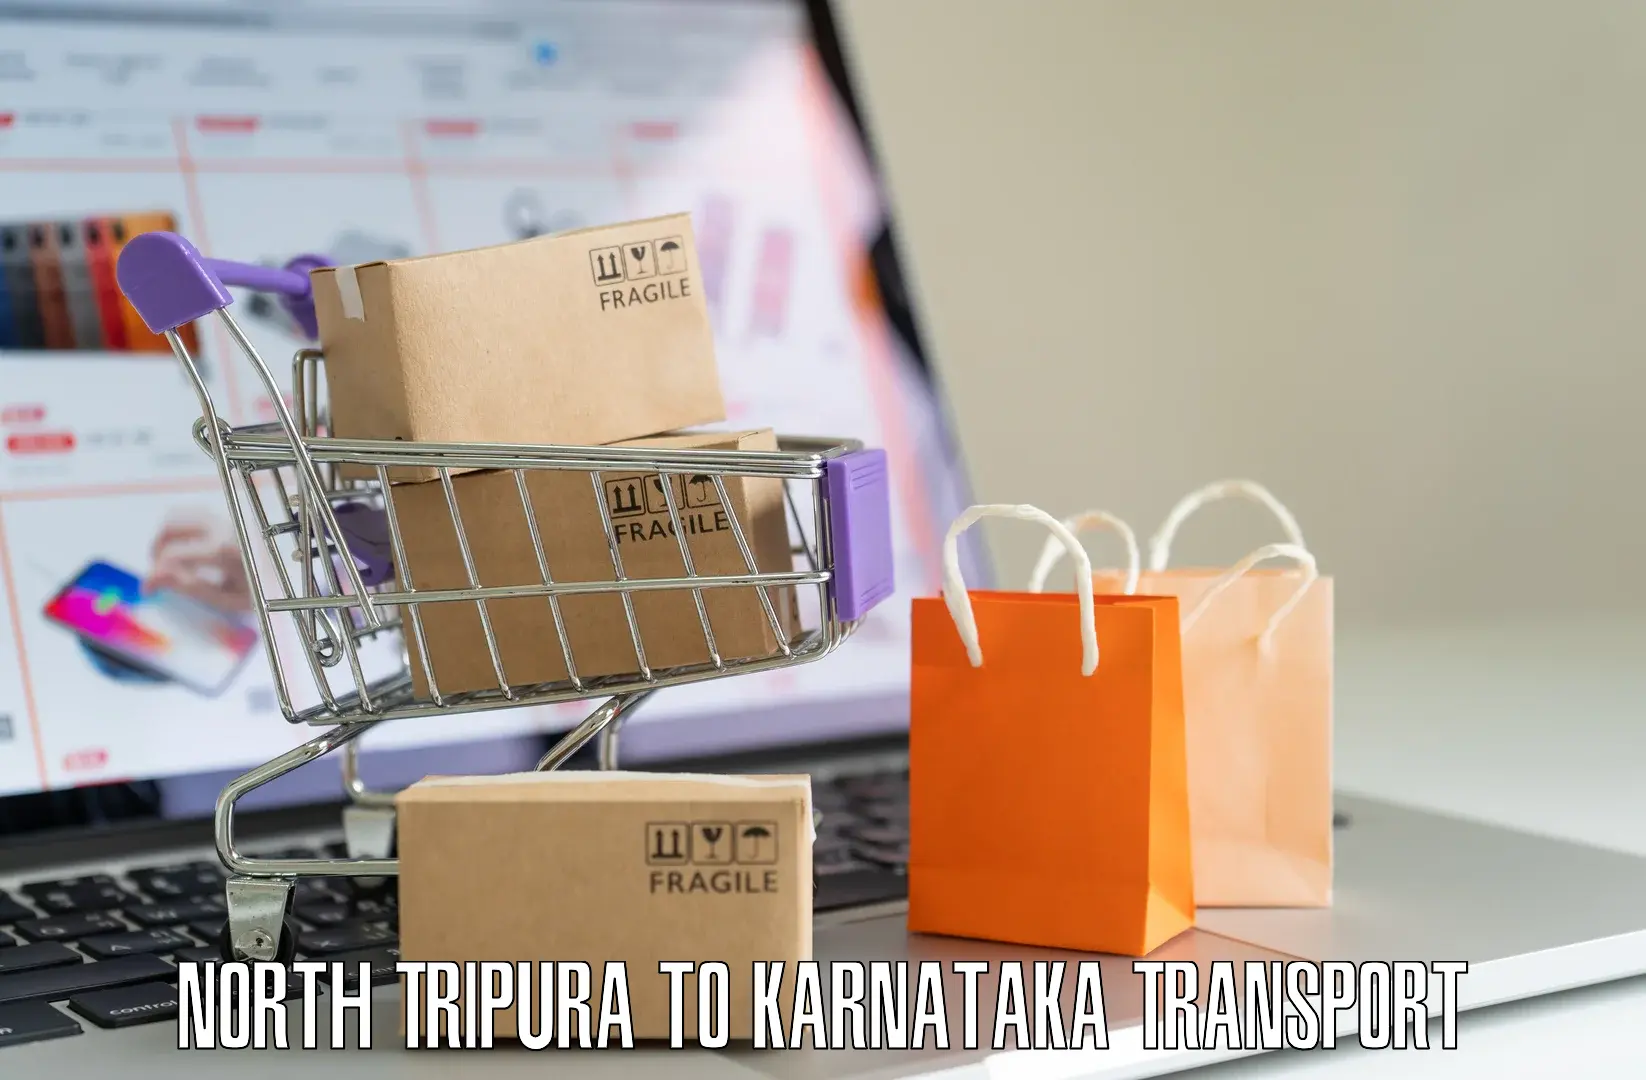 Interstate transport services North Tripura to Kotturu